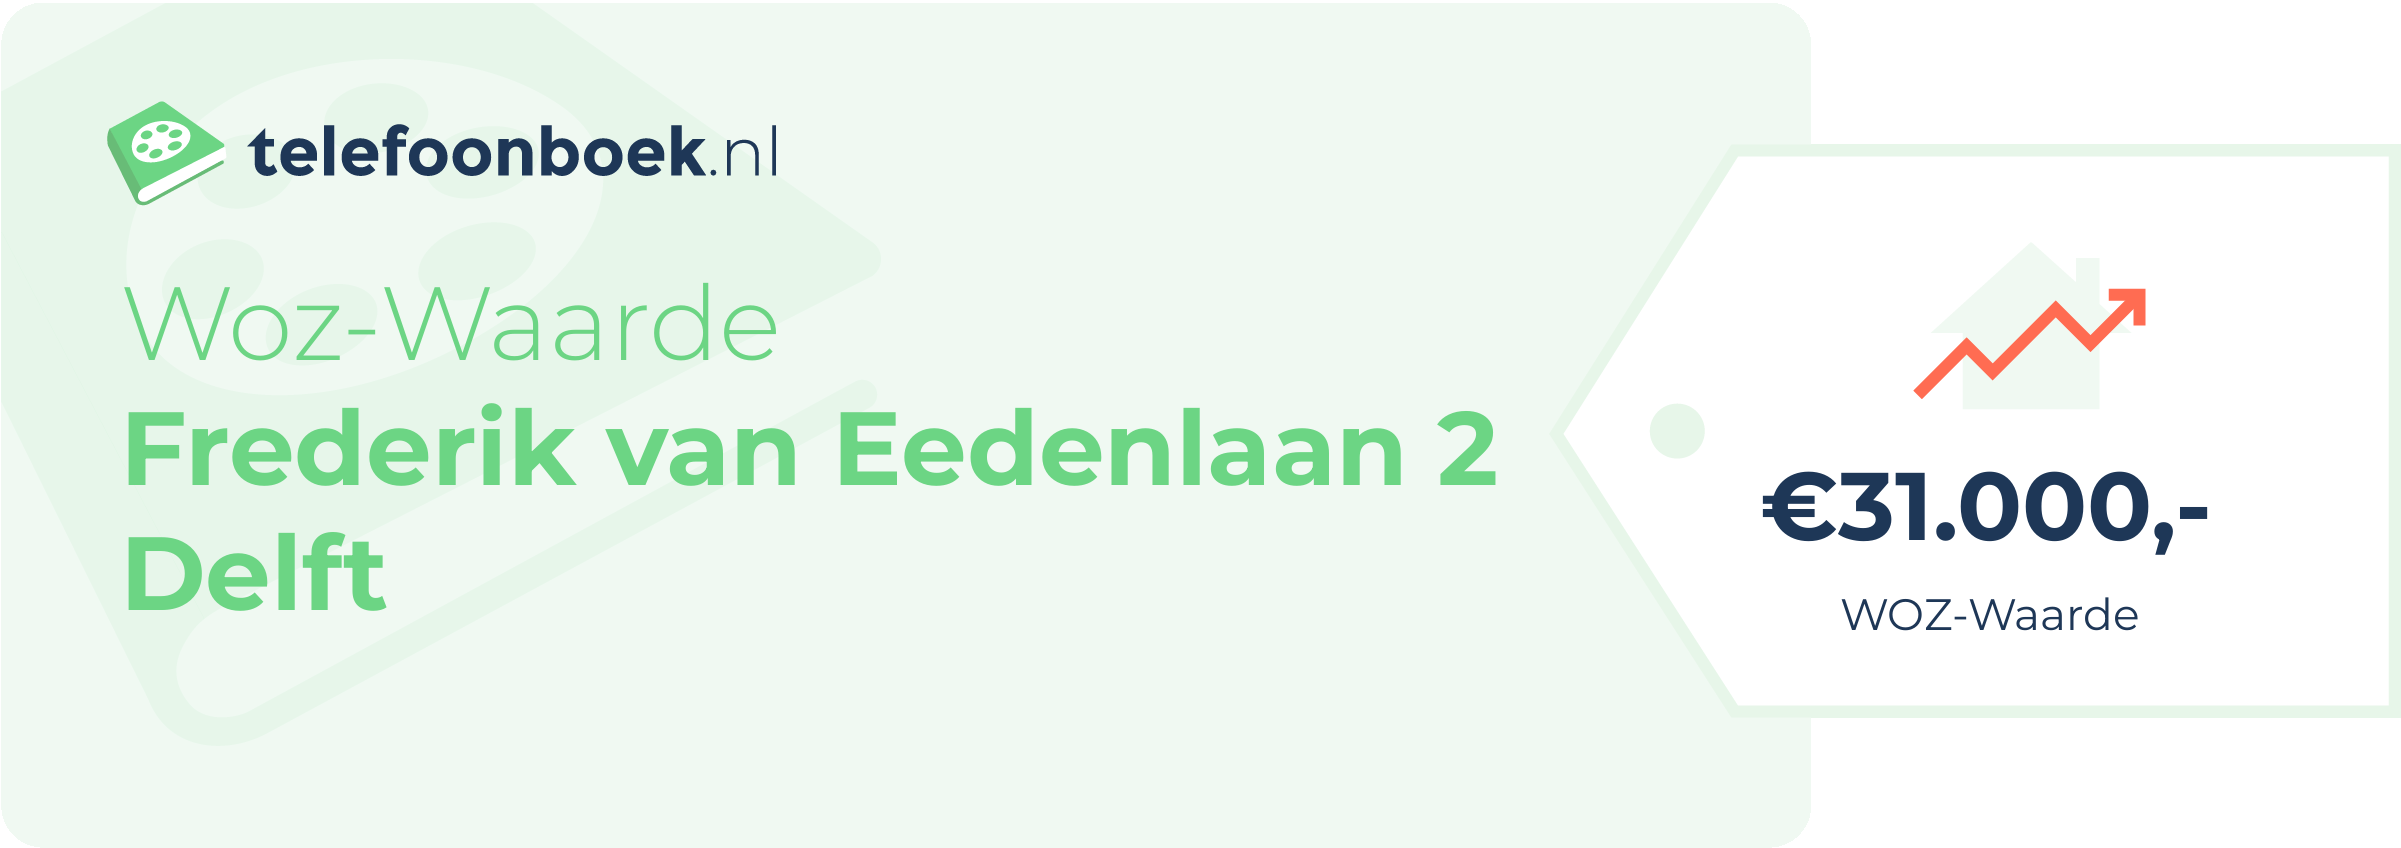 WOZ-waarde Frederik Van Eedenlaan 2 Delft